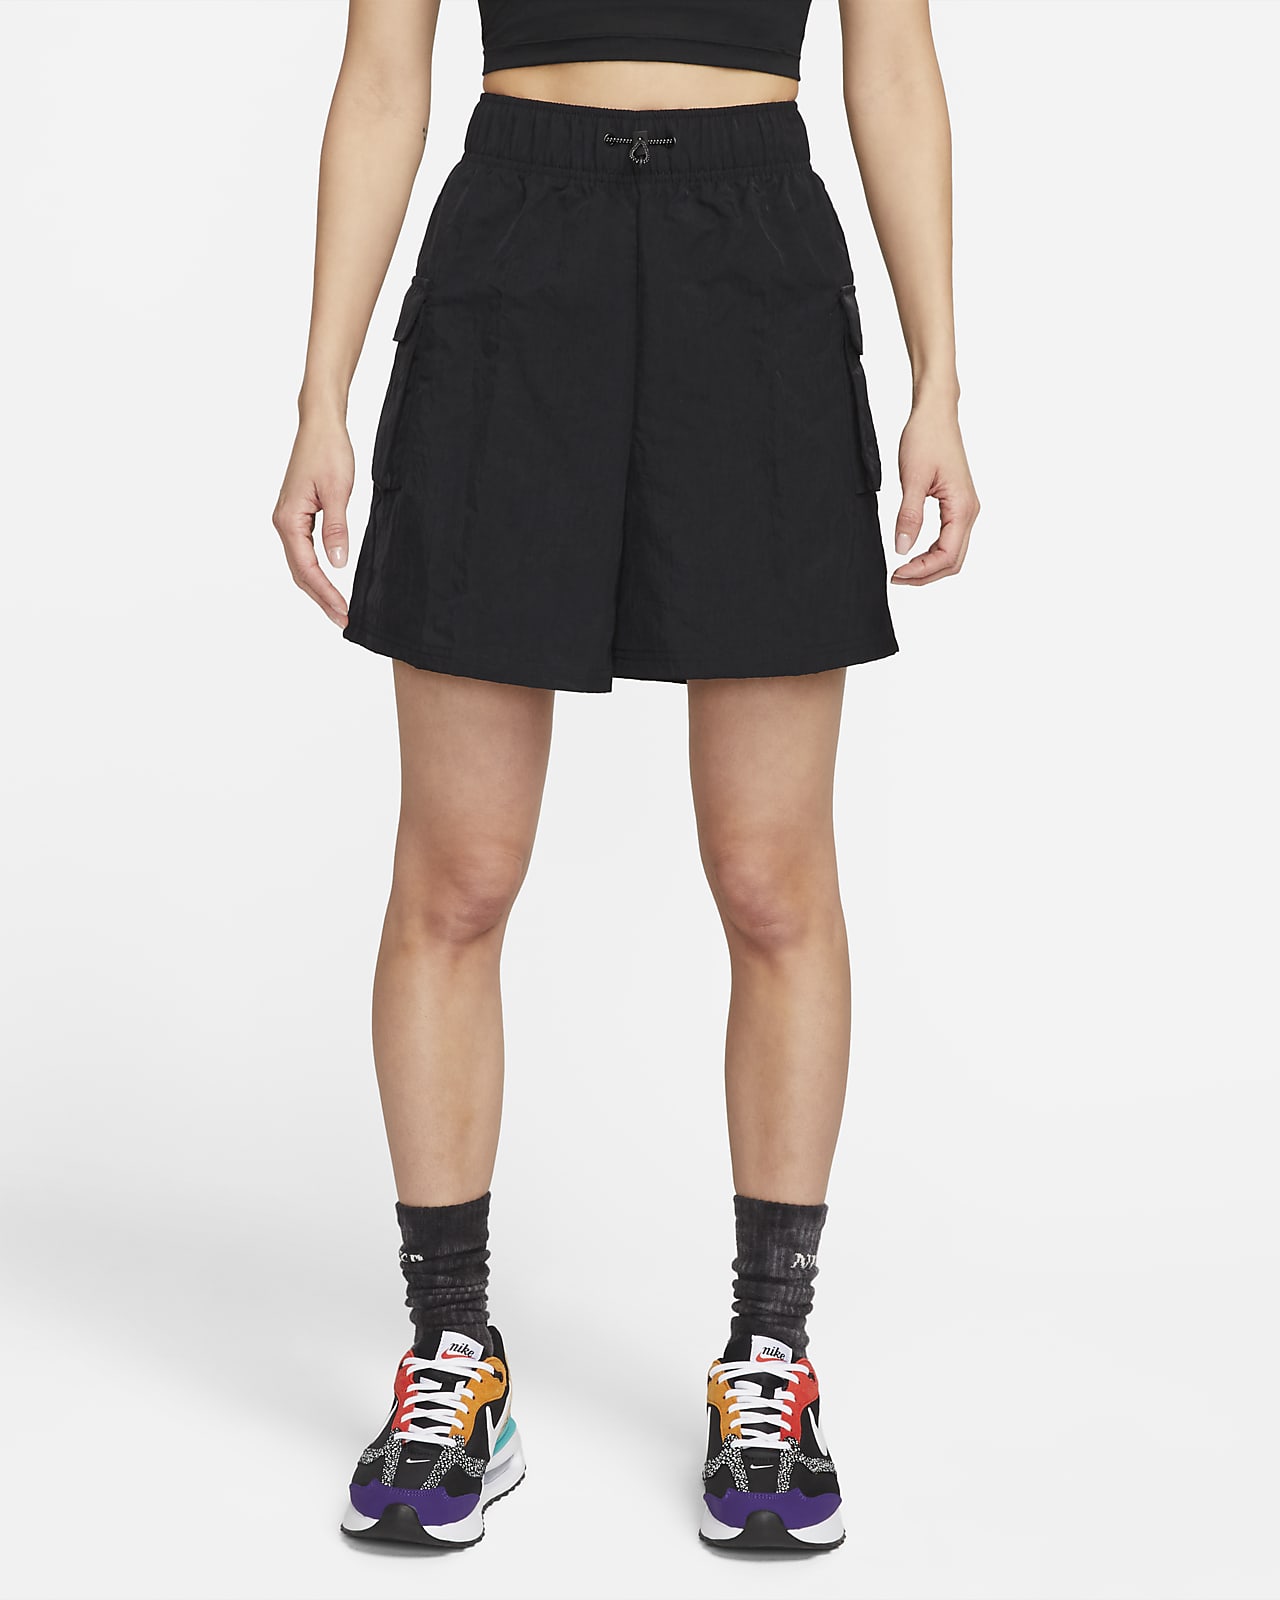 Nike Sportswear Essential 女款梭織高腰短褲